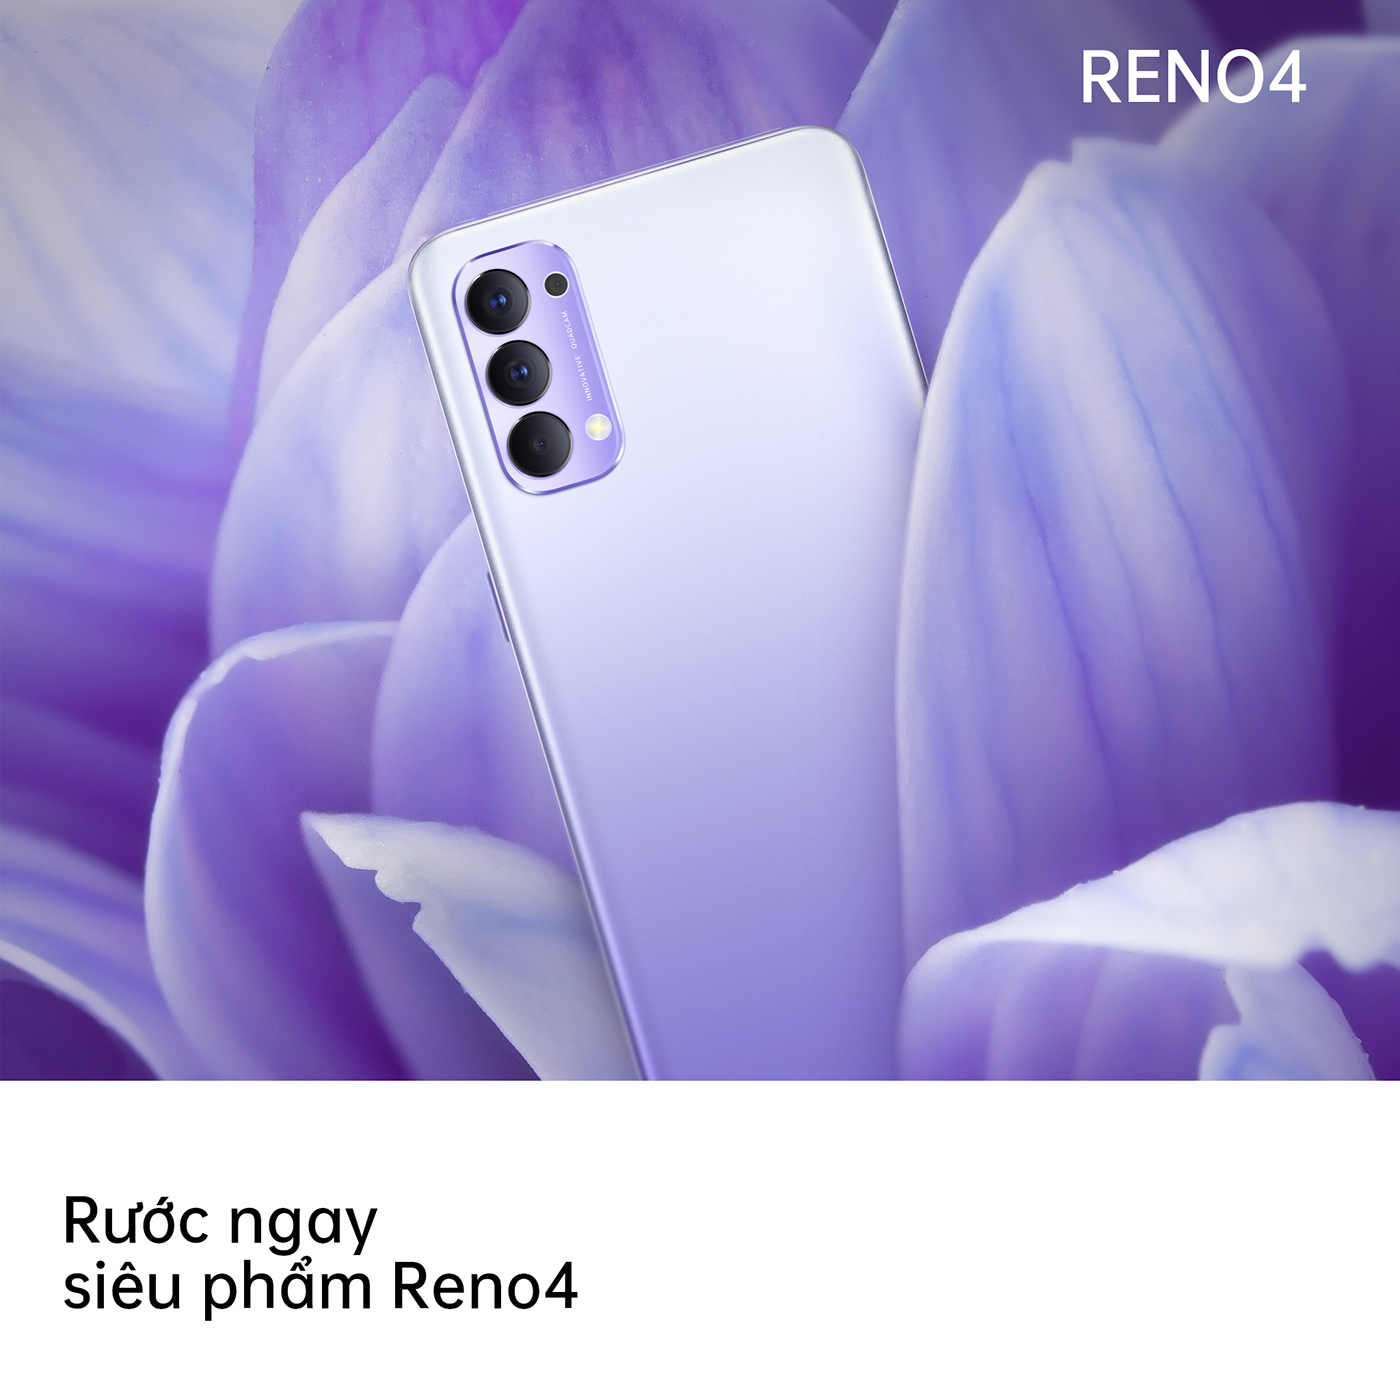 color creative creative deisgn digital design graphic design  Oppo oppo vietnam phone RENO4 smartphone